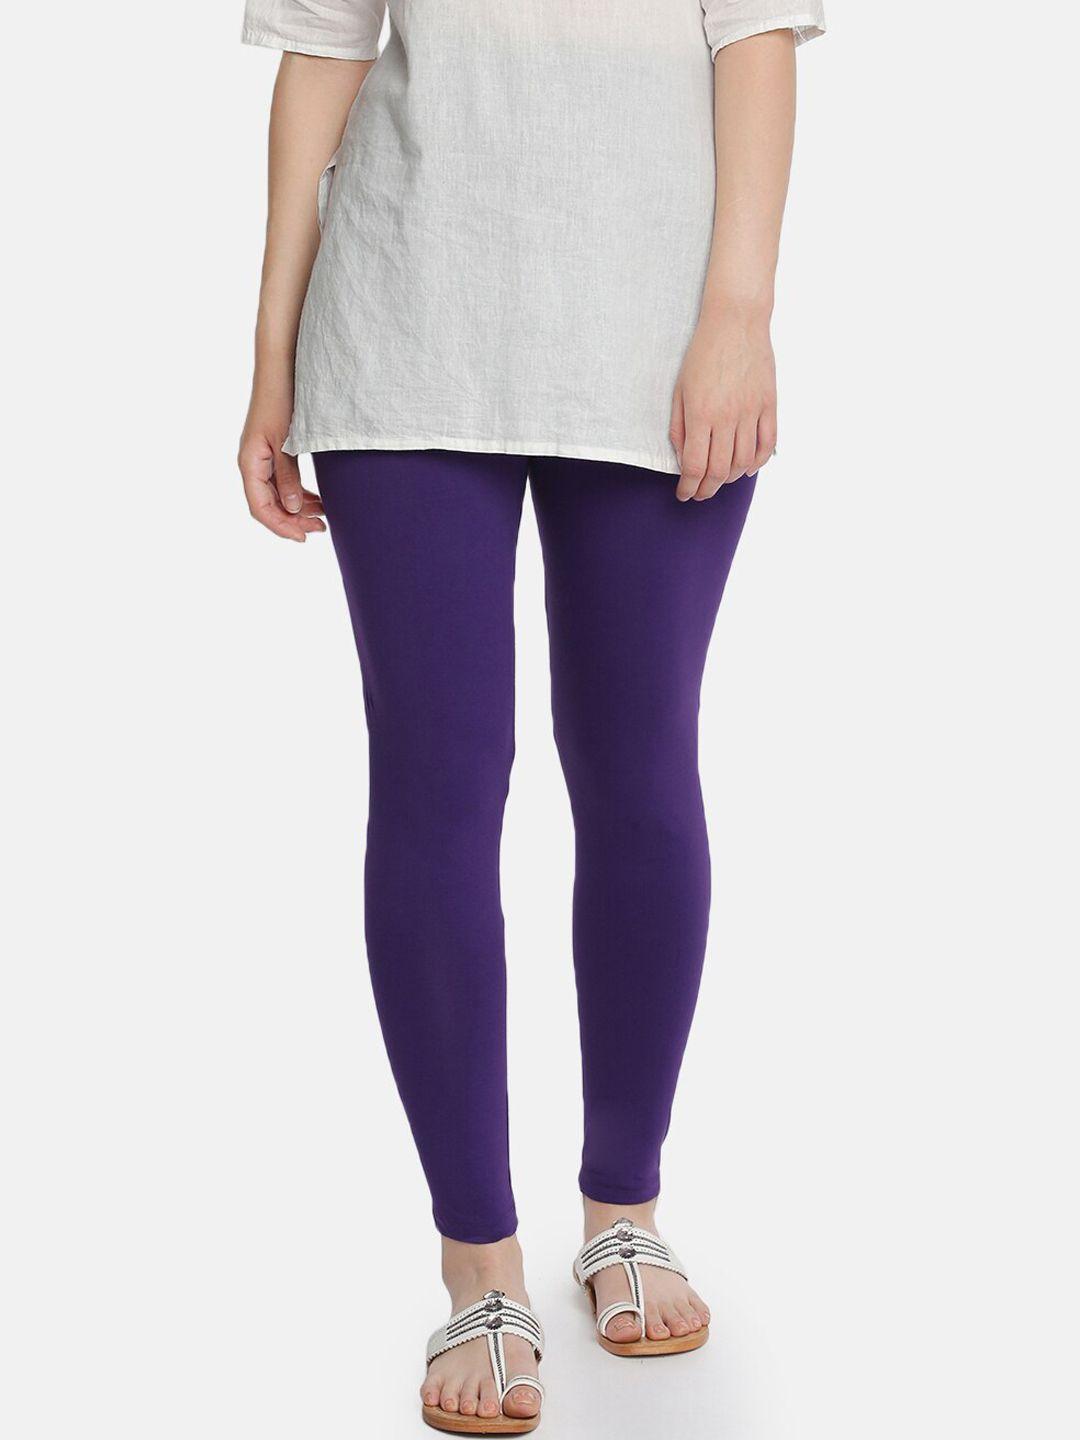 dollar-missy-women-purple-solid-ankle-length-leggings